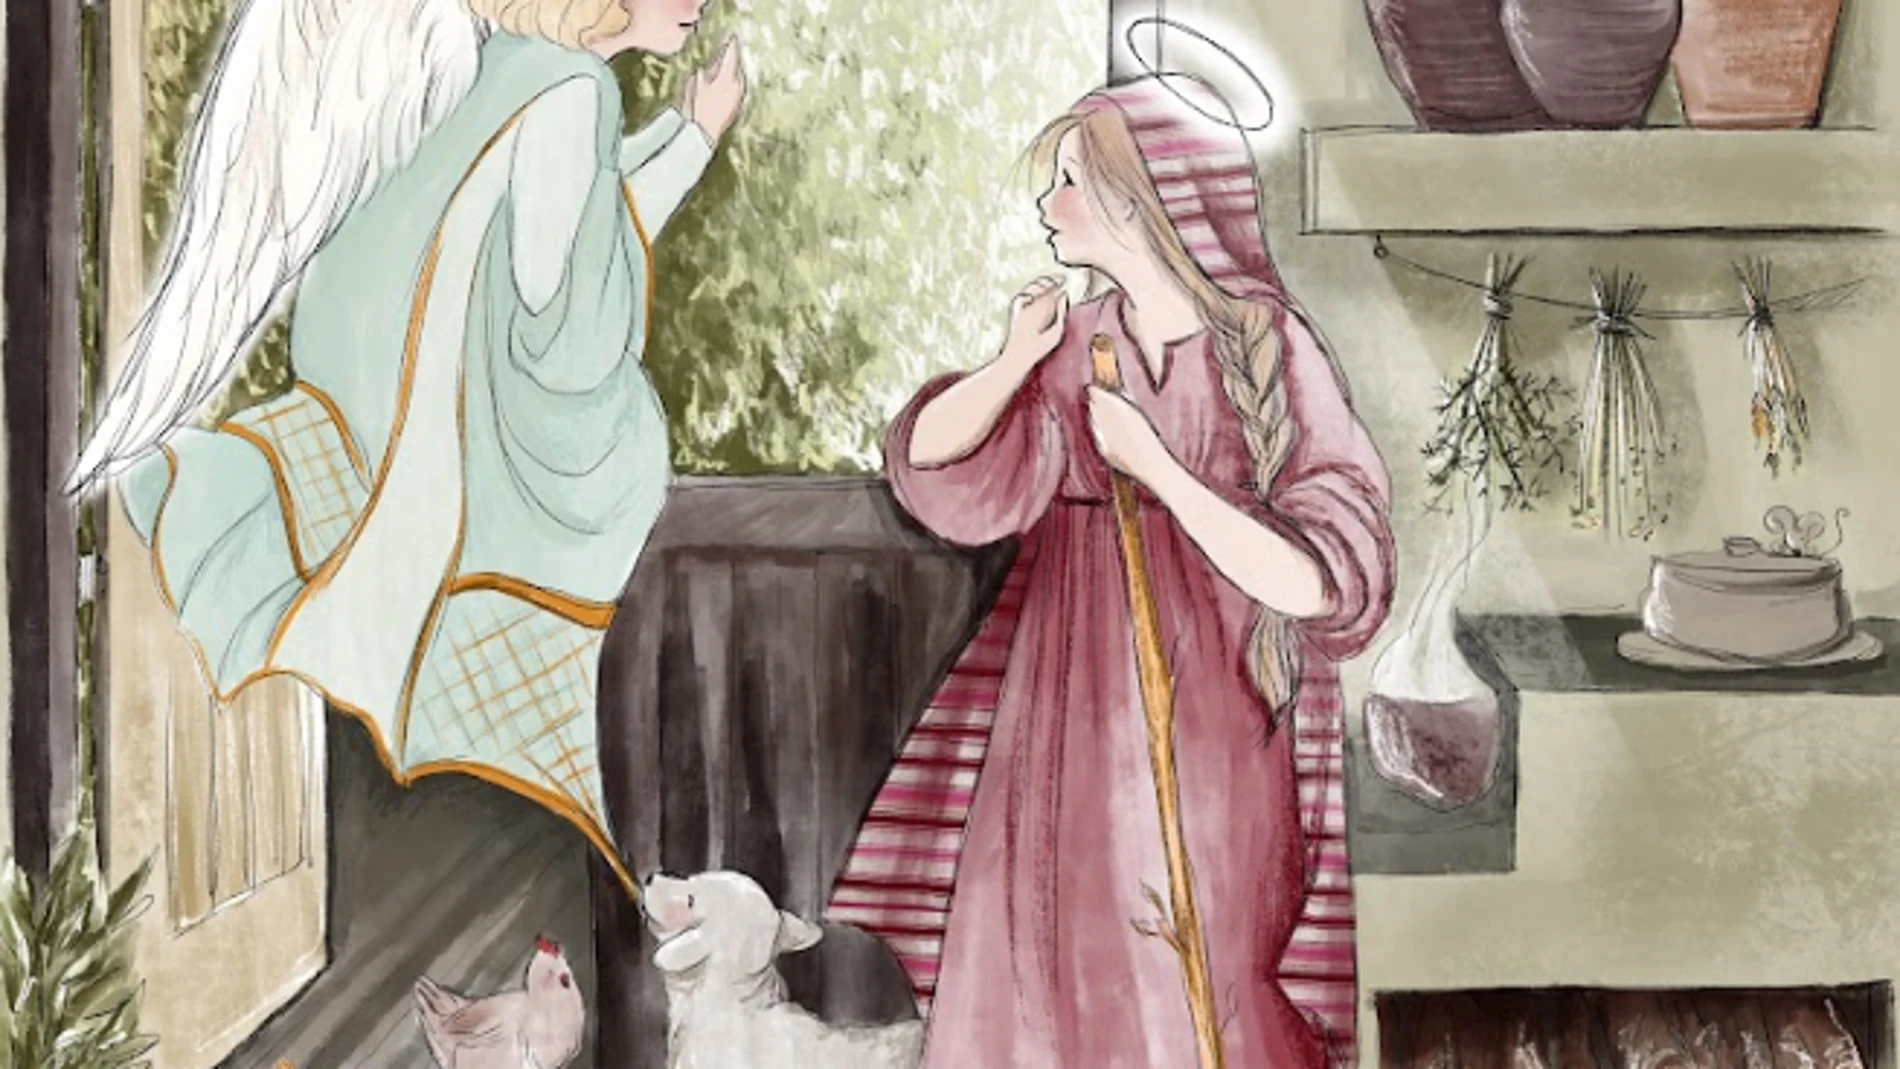 «Historia de la Navidad» incluye ilustraciones de pasajes como la Anunciación del ángel a la Virgen María